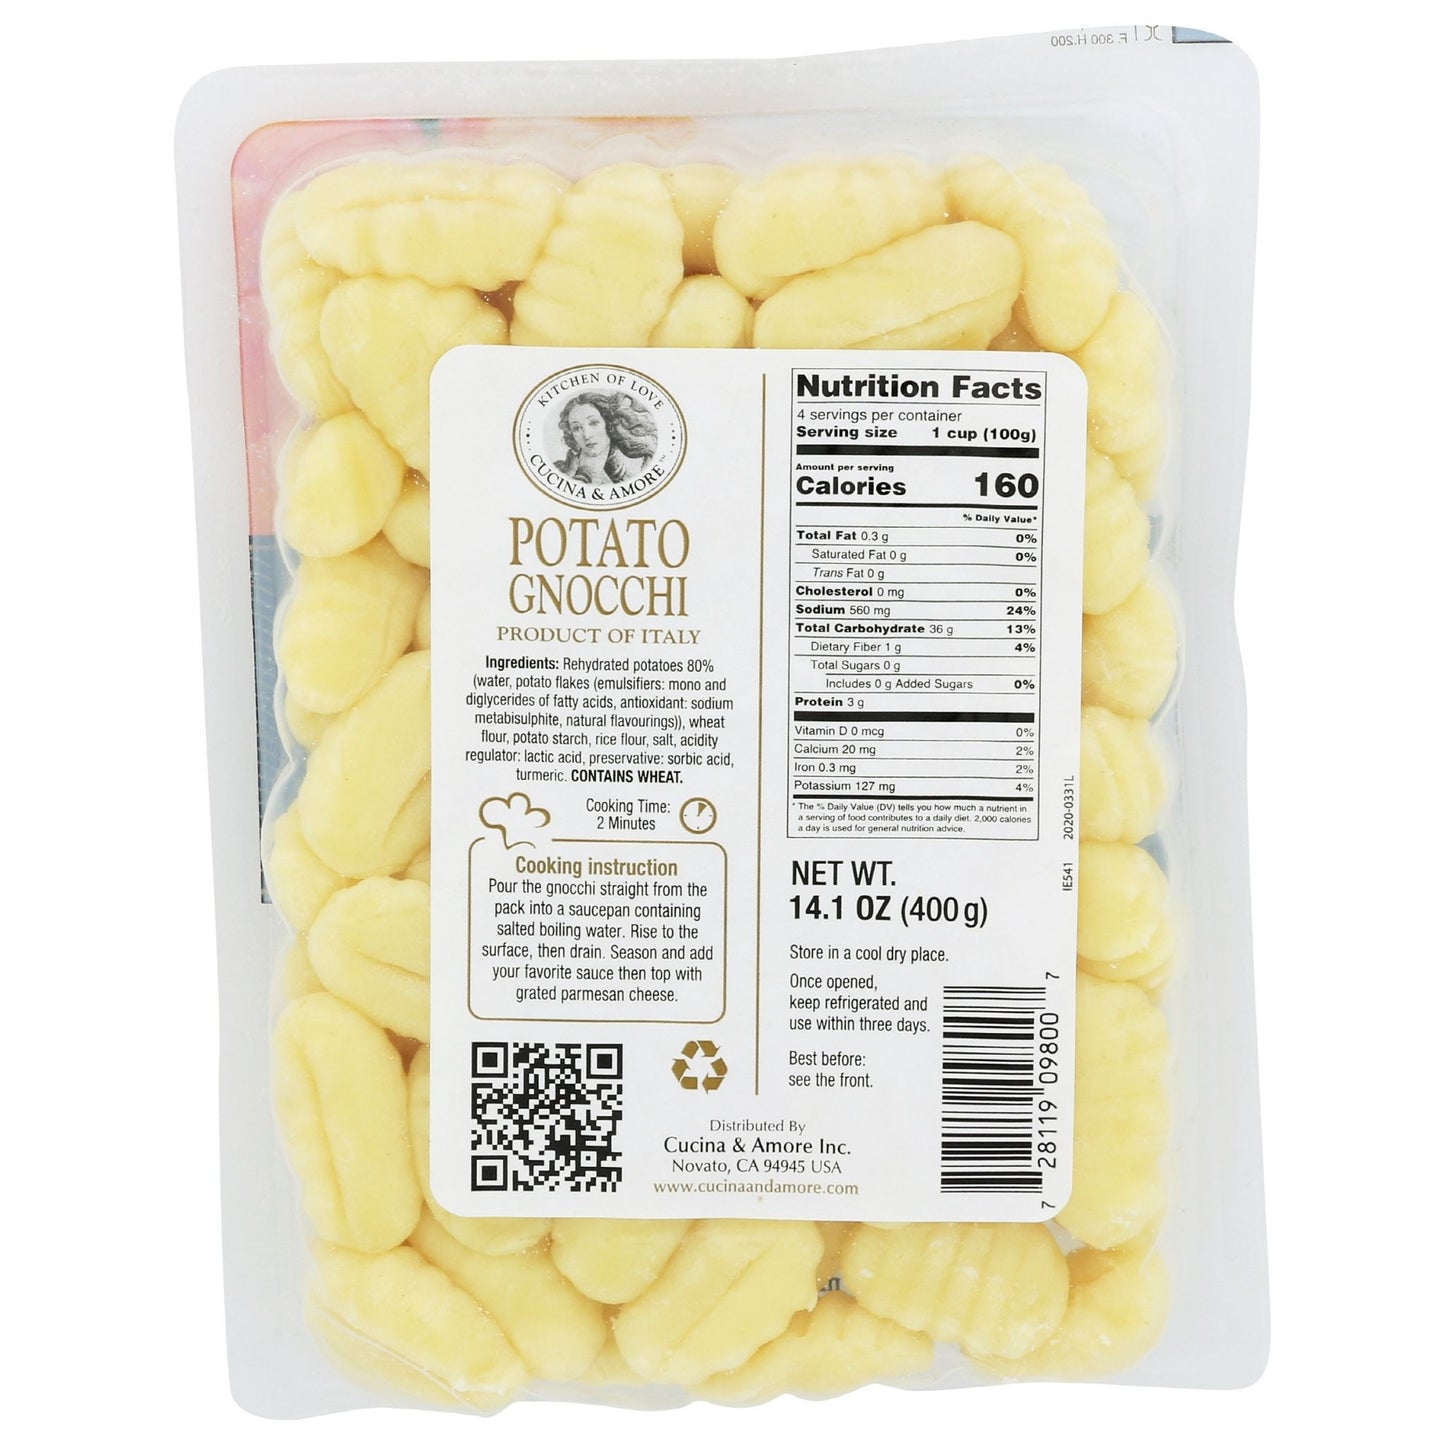 Potato Gnocchi - 4 Pack